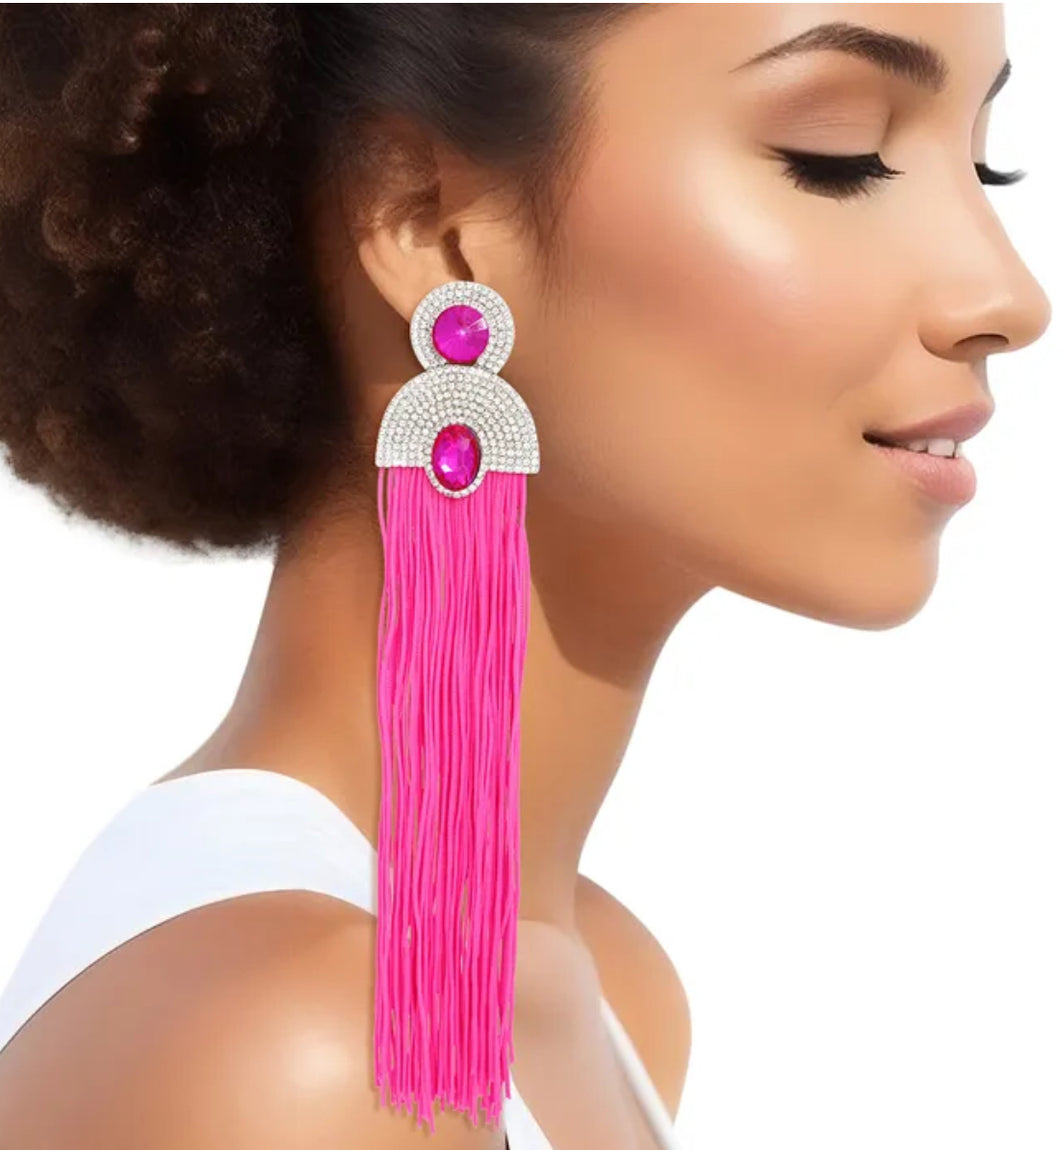 Ms. Neon Pink Rhinestone Earrings